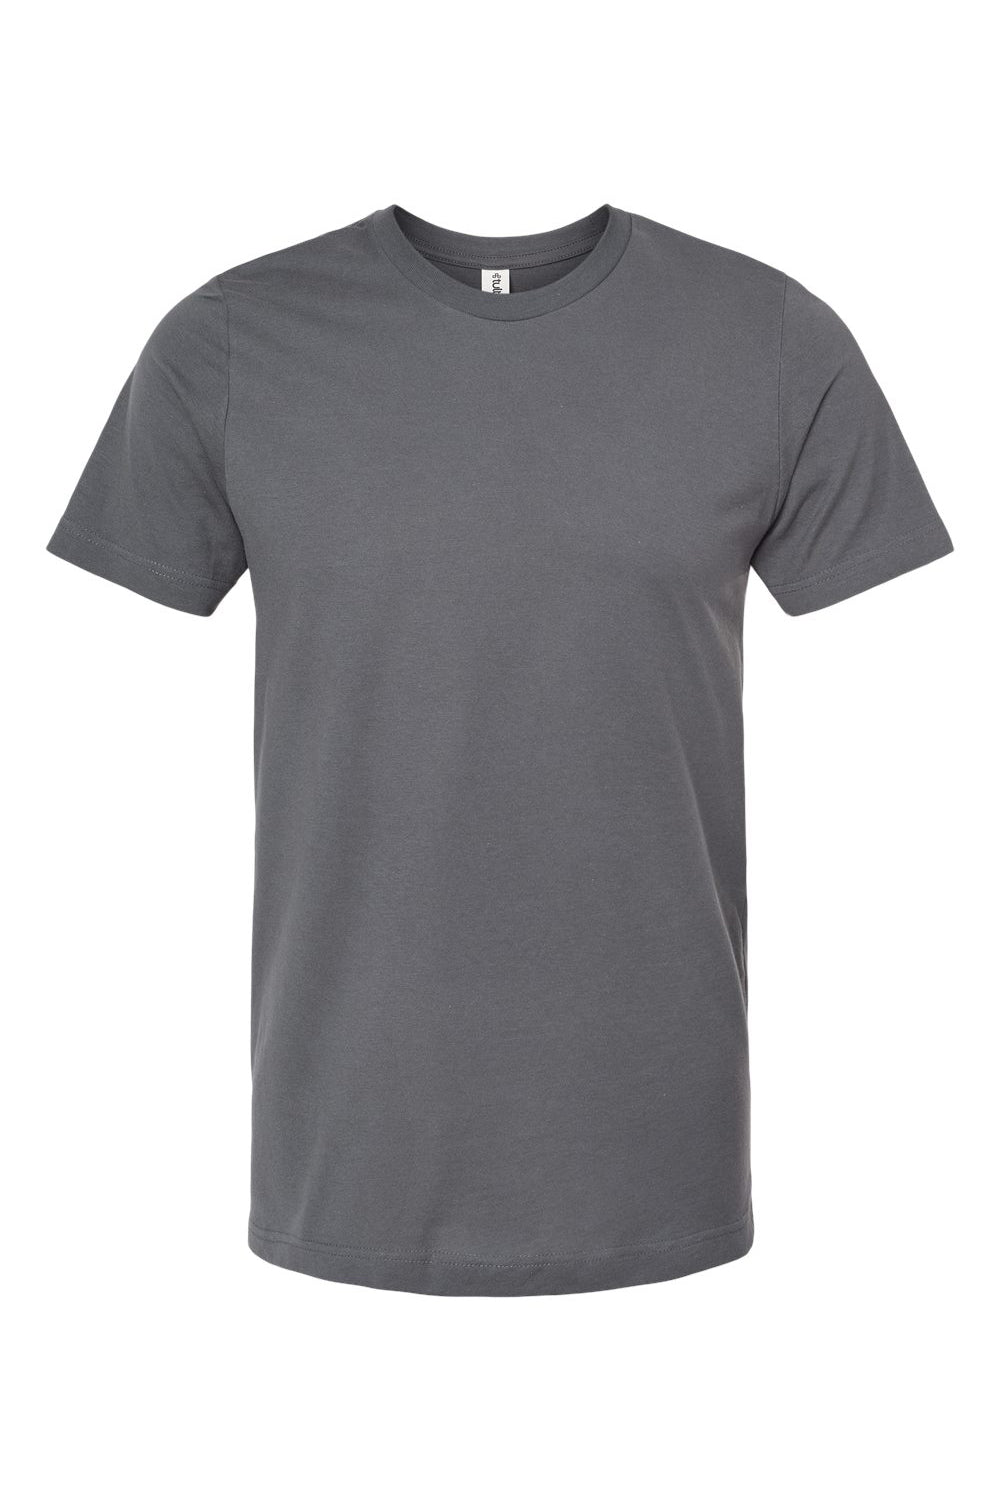 Tultex 502 Mens Premium Short Sleeve Crewneck T-Shirt Charcoal Grey Flat Front